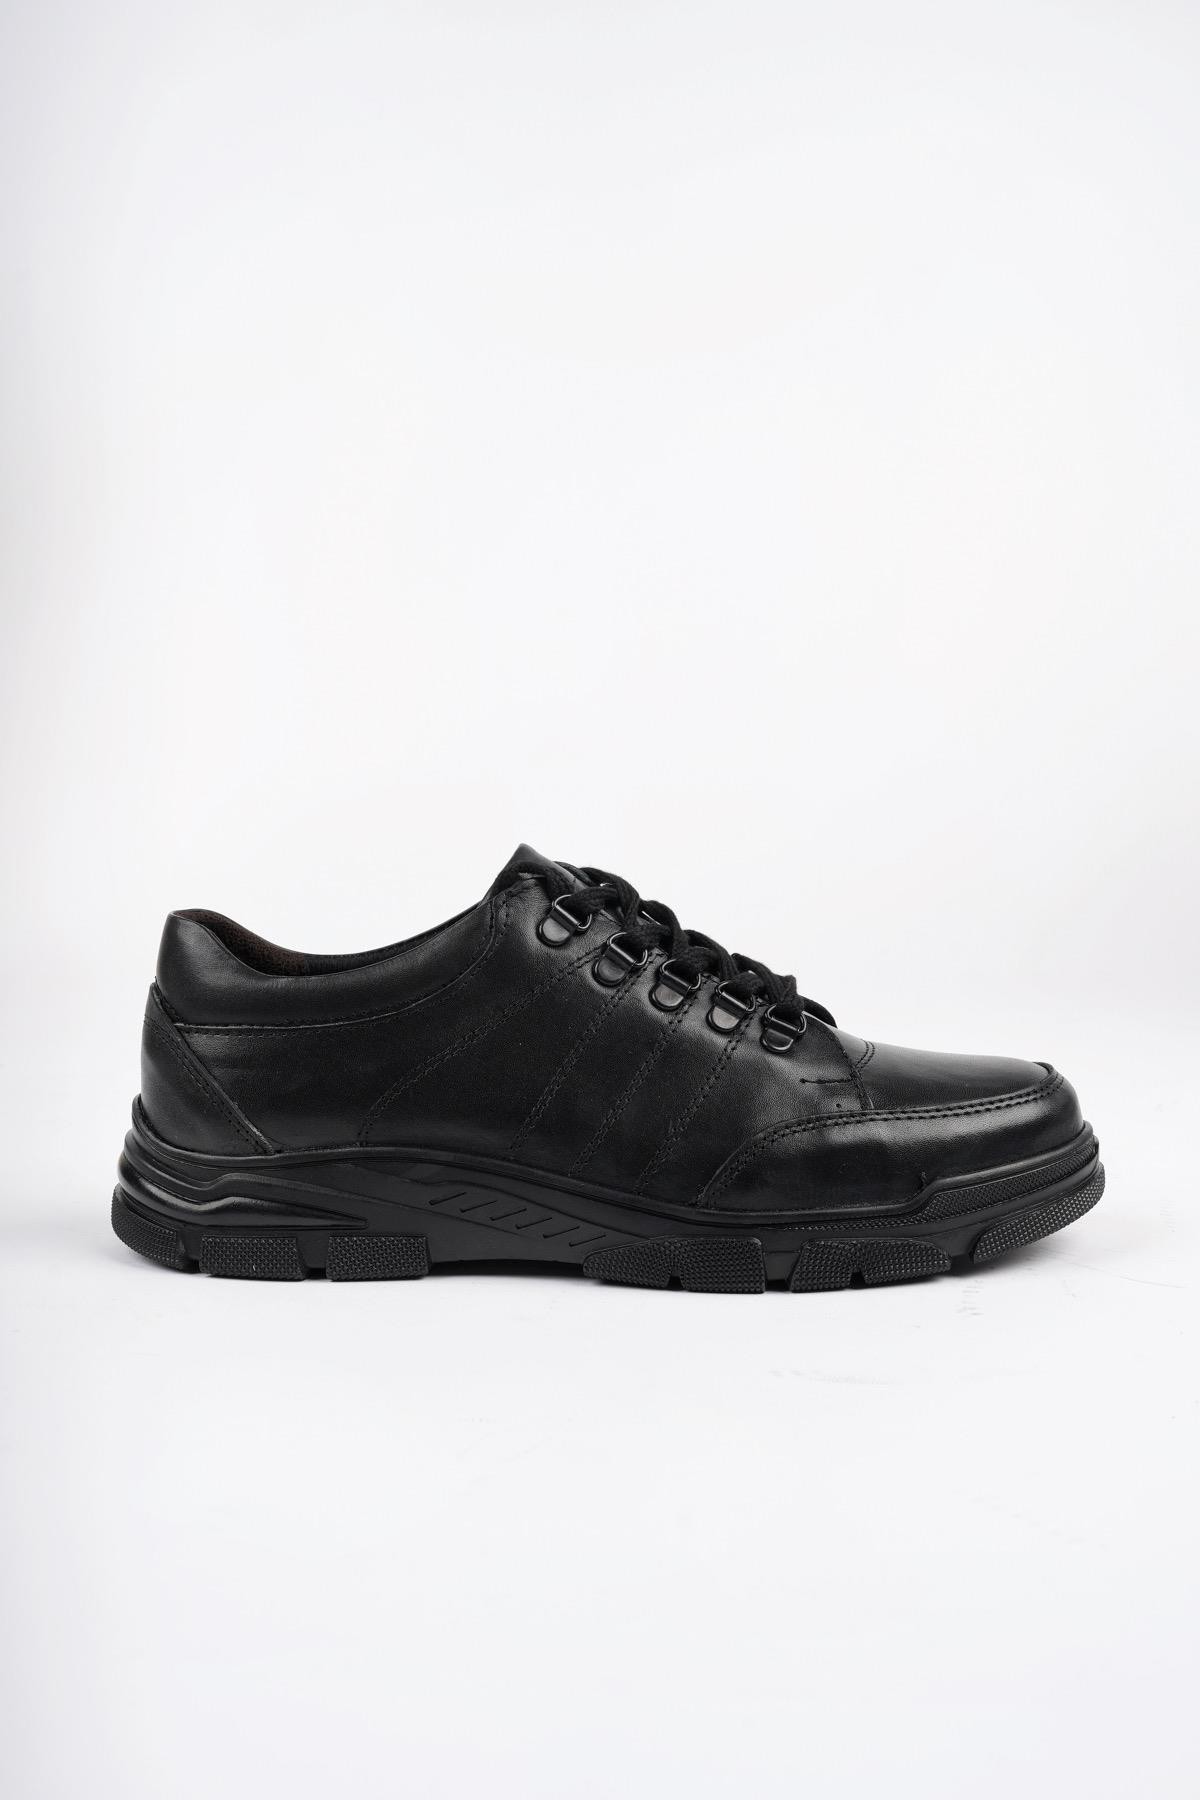 Muggo Harbin Garantili Erkek Günlük Klasik Hakiki Deri Kışlık Casual Ayakkabı